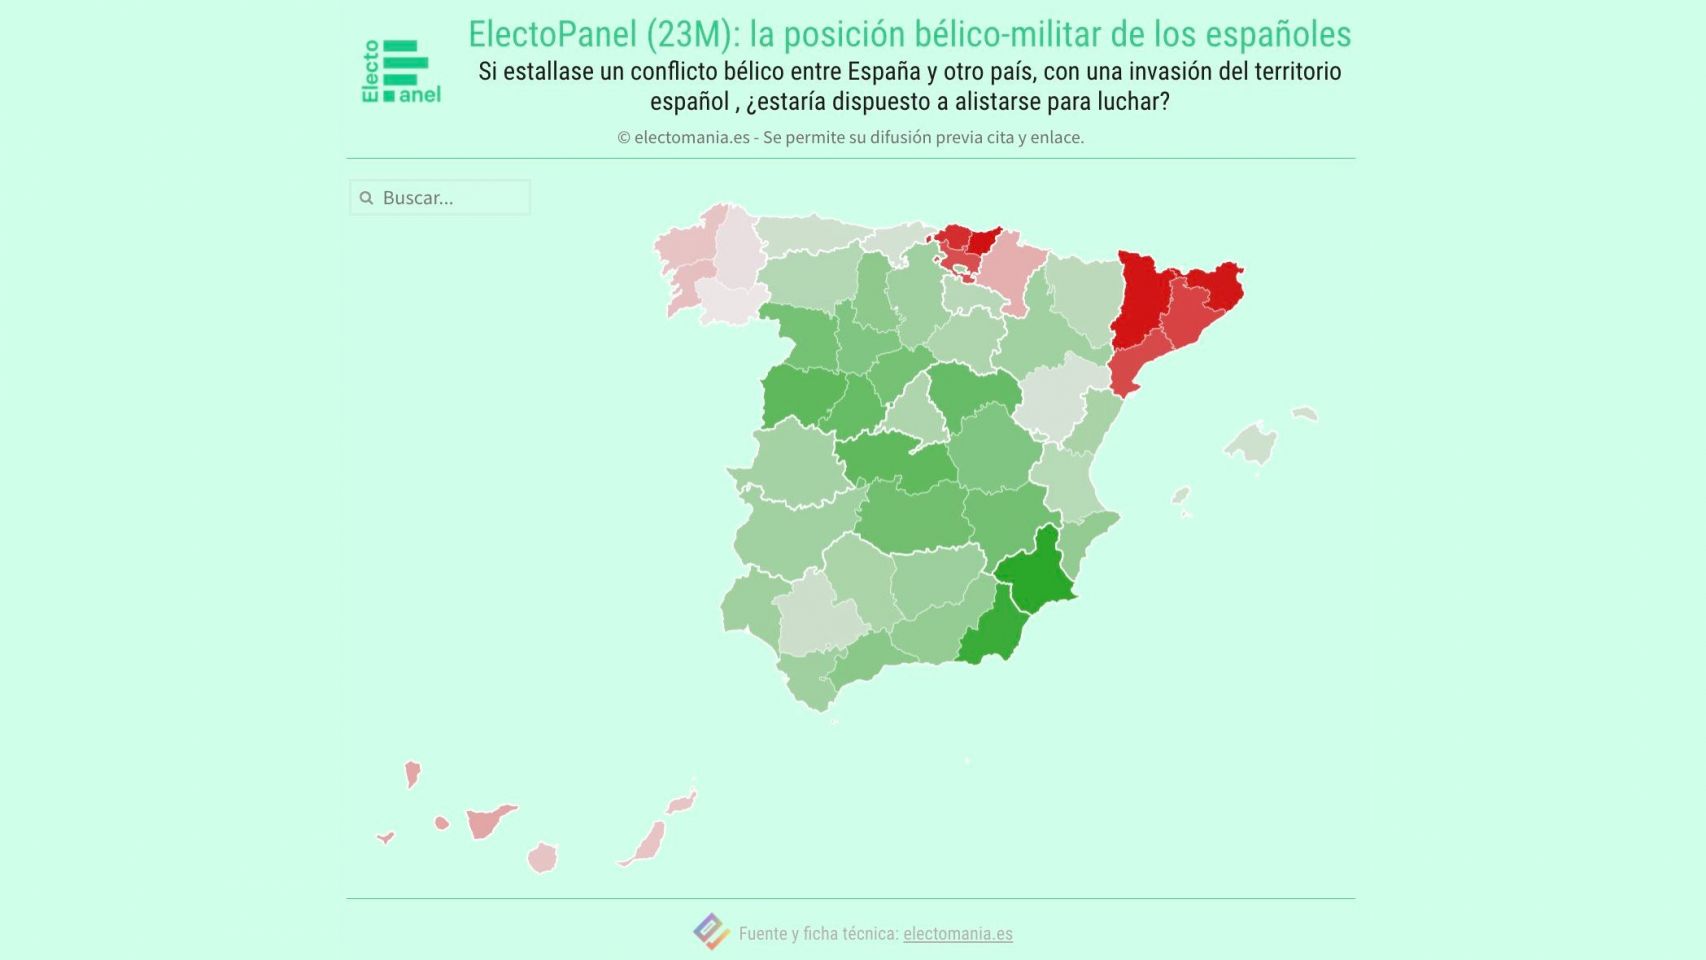 La mayoría de gallegos no defenderían España en caso de invasión.